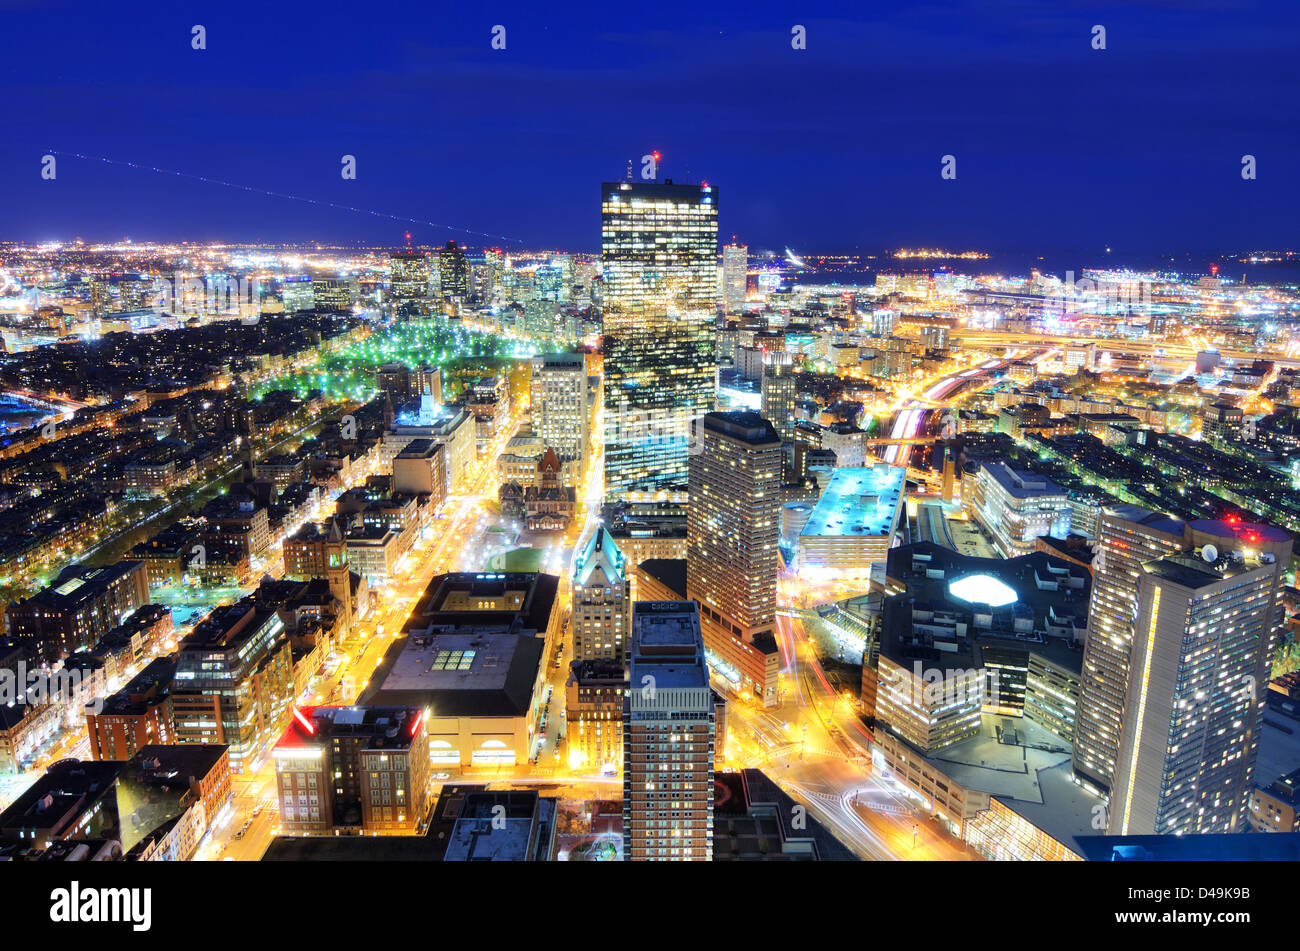 Vue aérienne du centre-ville de Boston, Massachusetts, USA. Banque D'Images